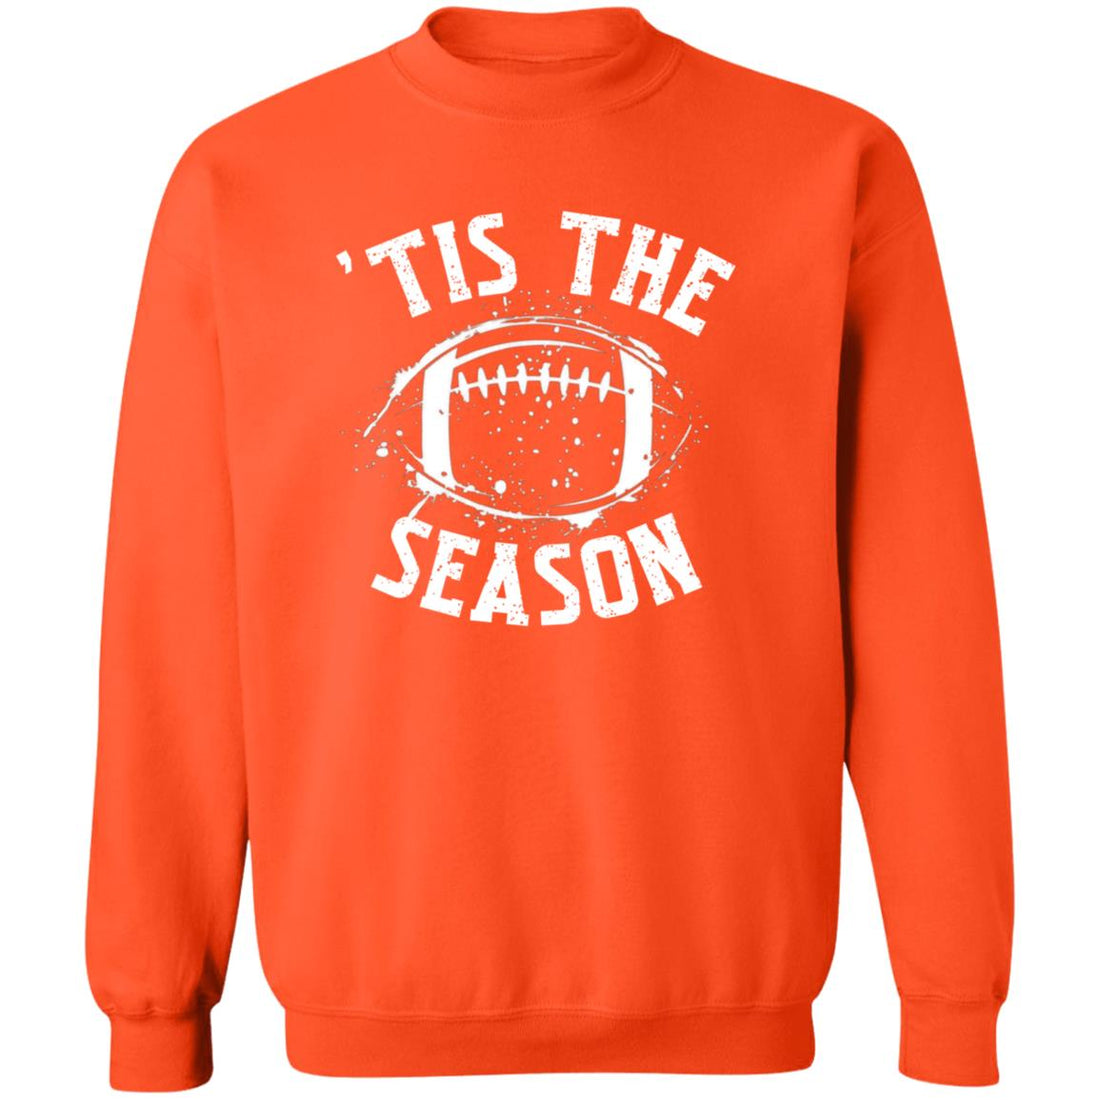 Tis The Season Football Crewneck Pullover Sweatshirt - Sweatshirts - Positively Sassy - Tis The Season Football Crewneck Pullover Sweatshirt